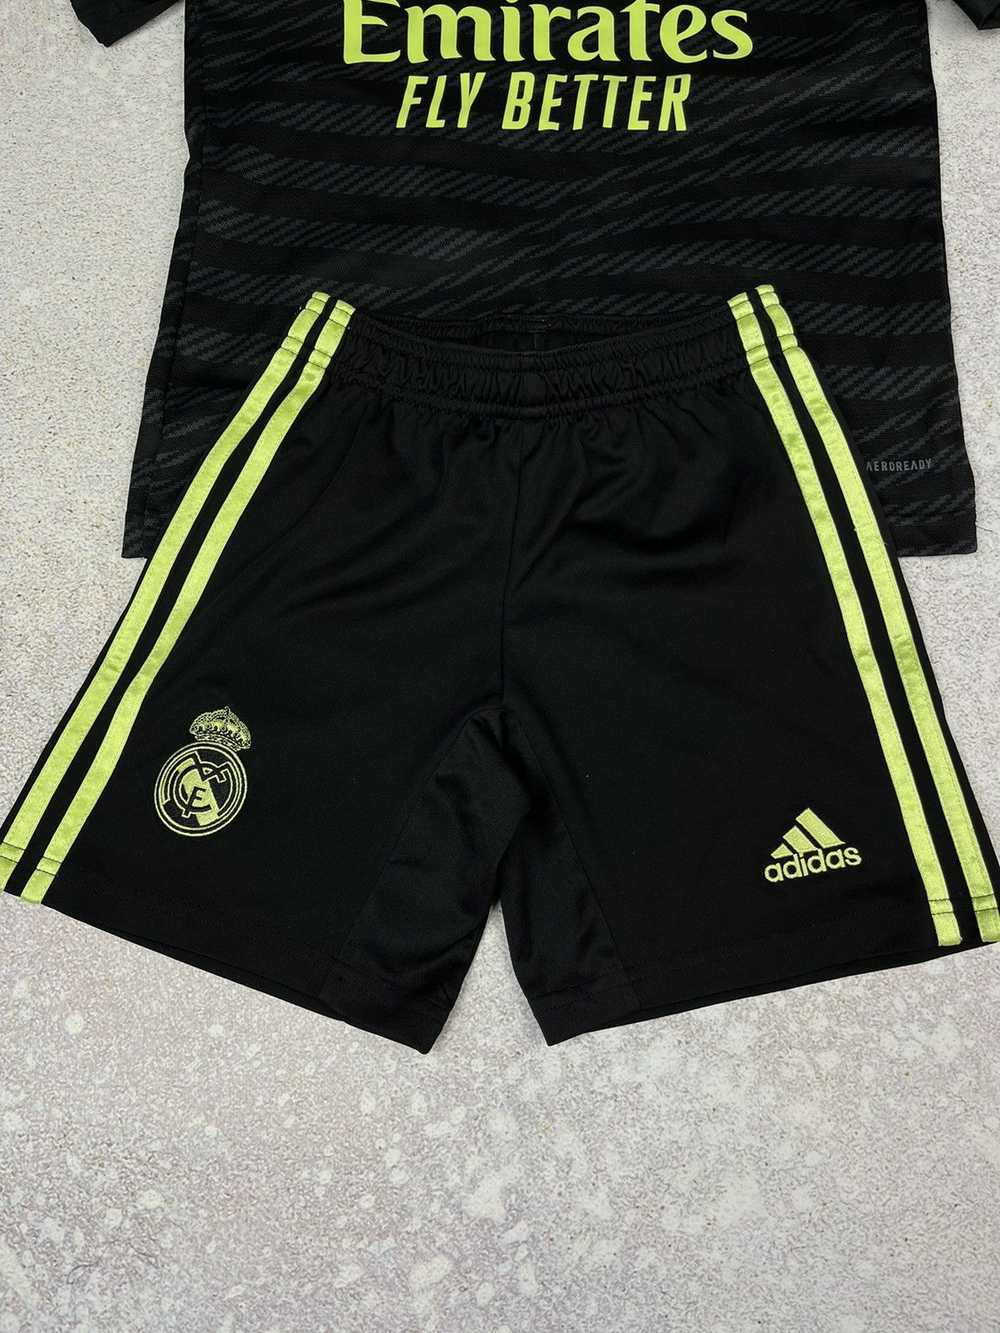 Adidas × Art of Football × Real Madrid Real Madri… - image 3